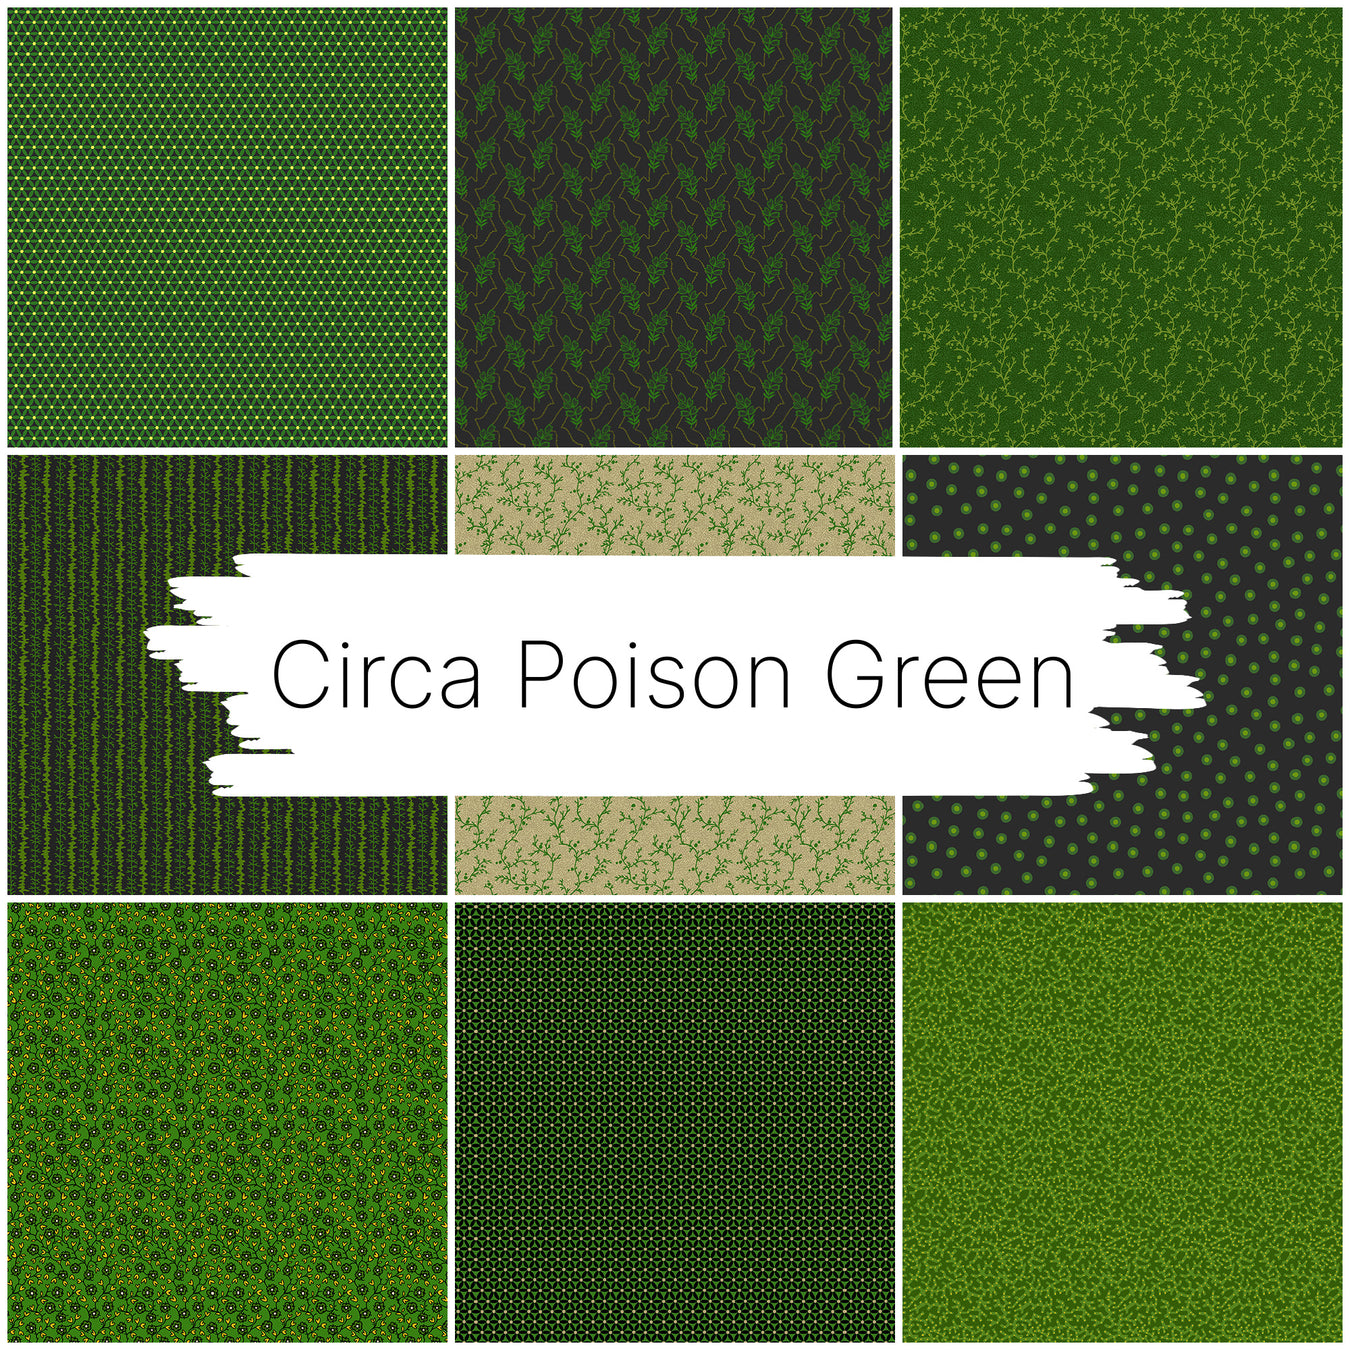 Circa Poison Green